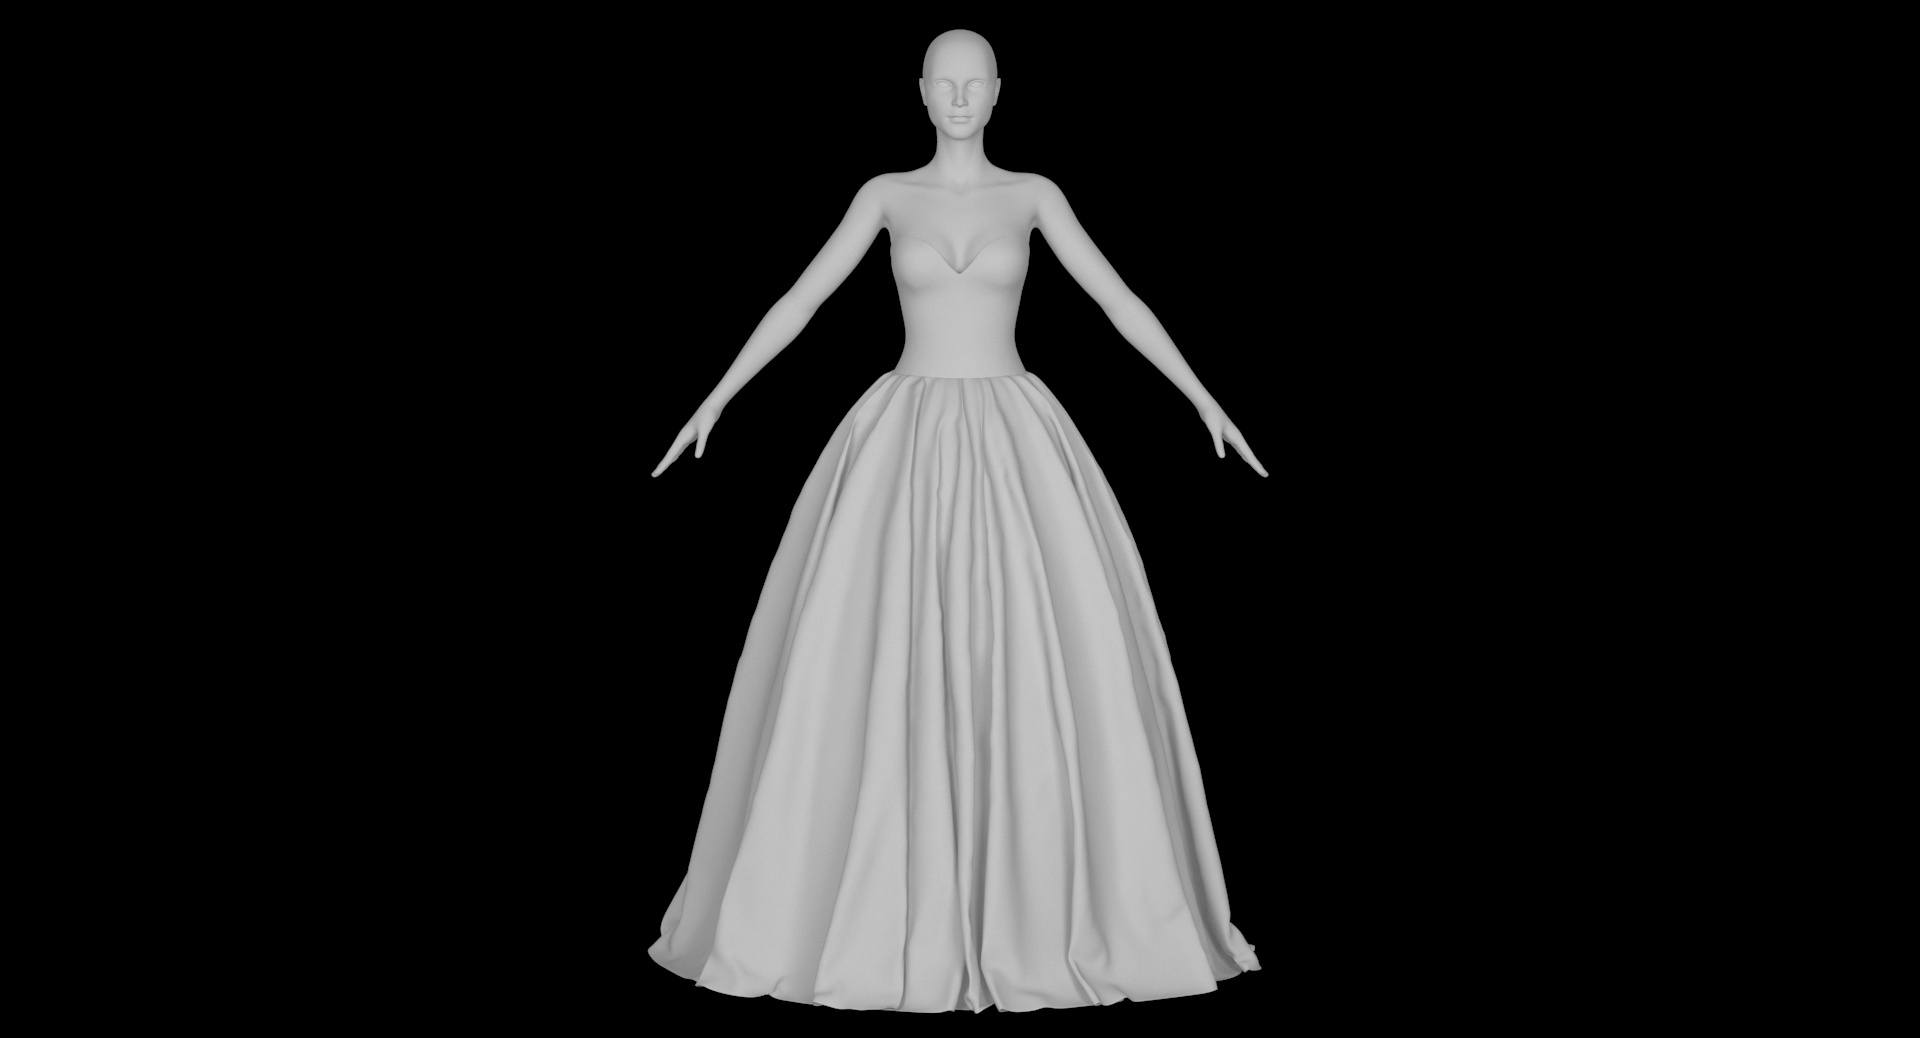 Wedding dress 019 model - TurboSquid 1217215